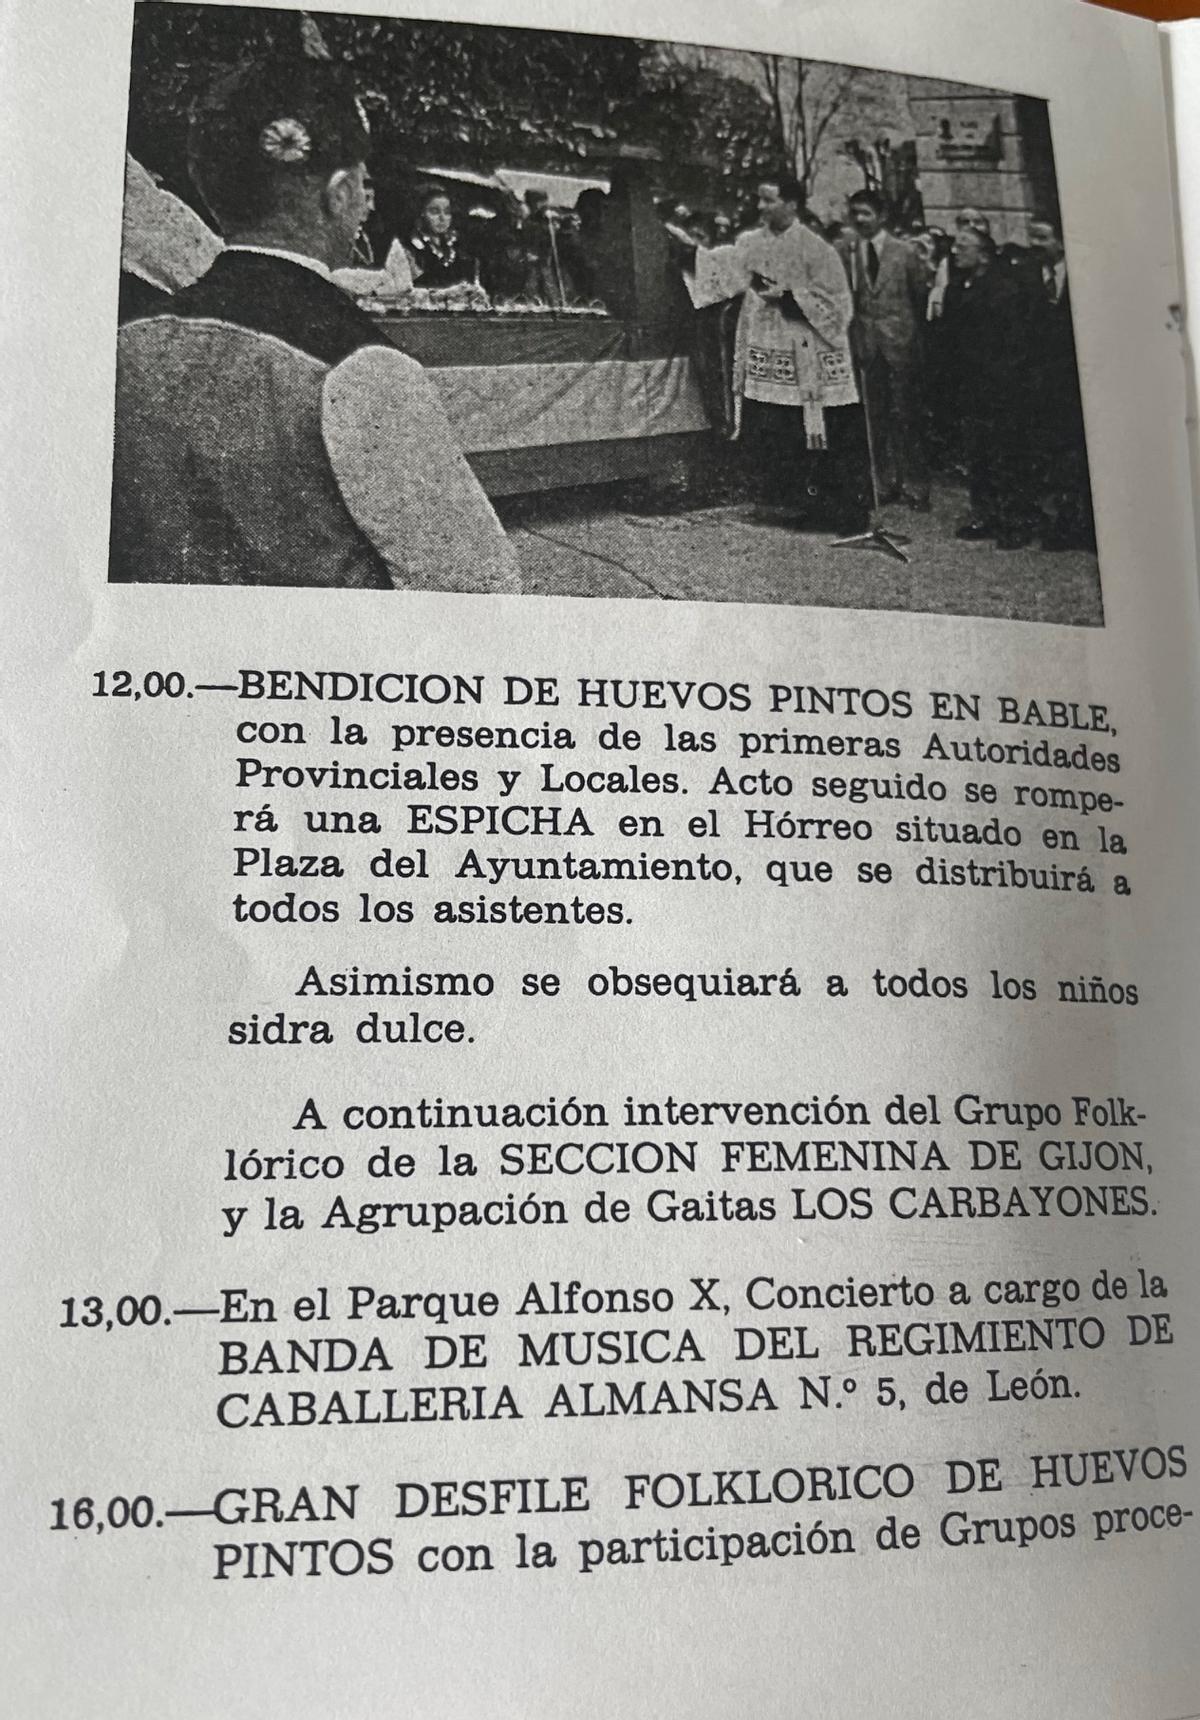 El programa de las fiestas de 1974, que se celebraron los 14, 15 y 16 de abril de ese año.